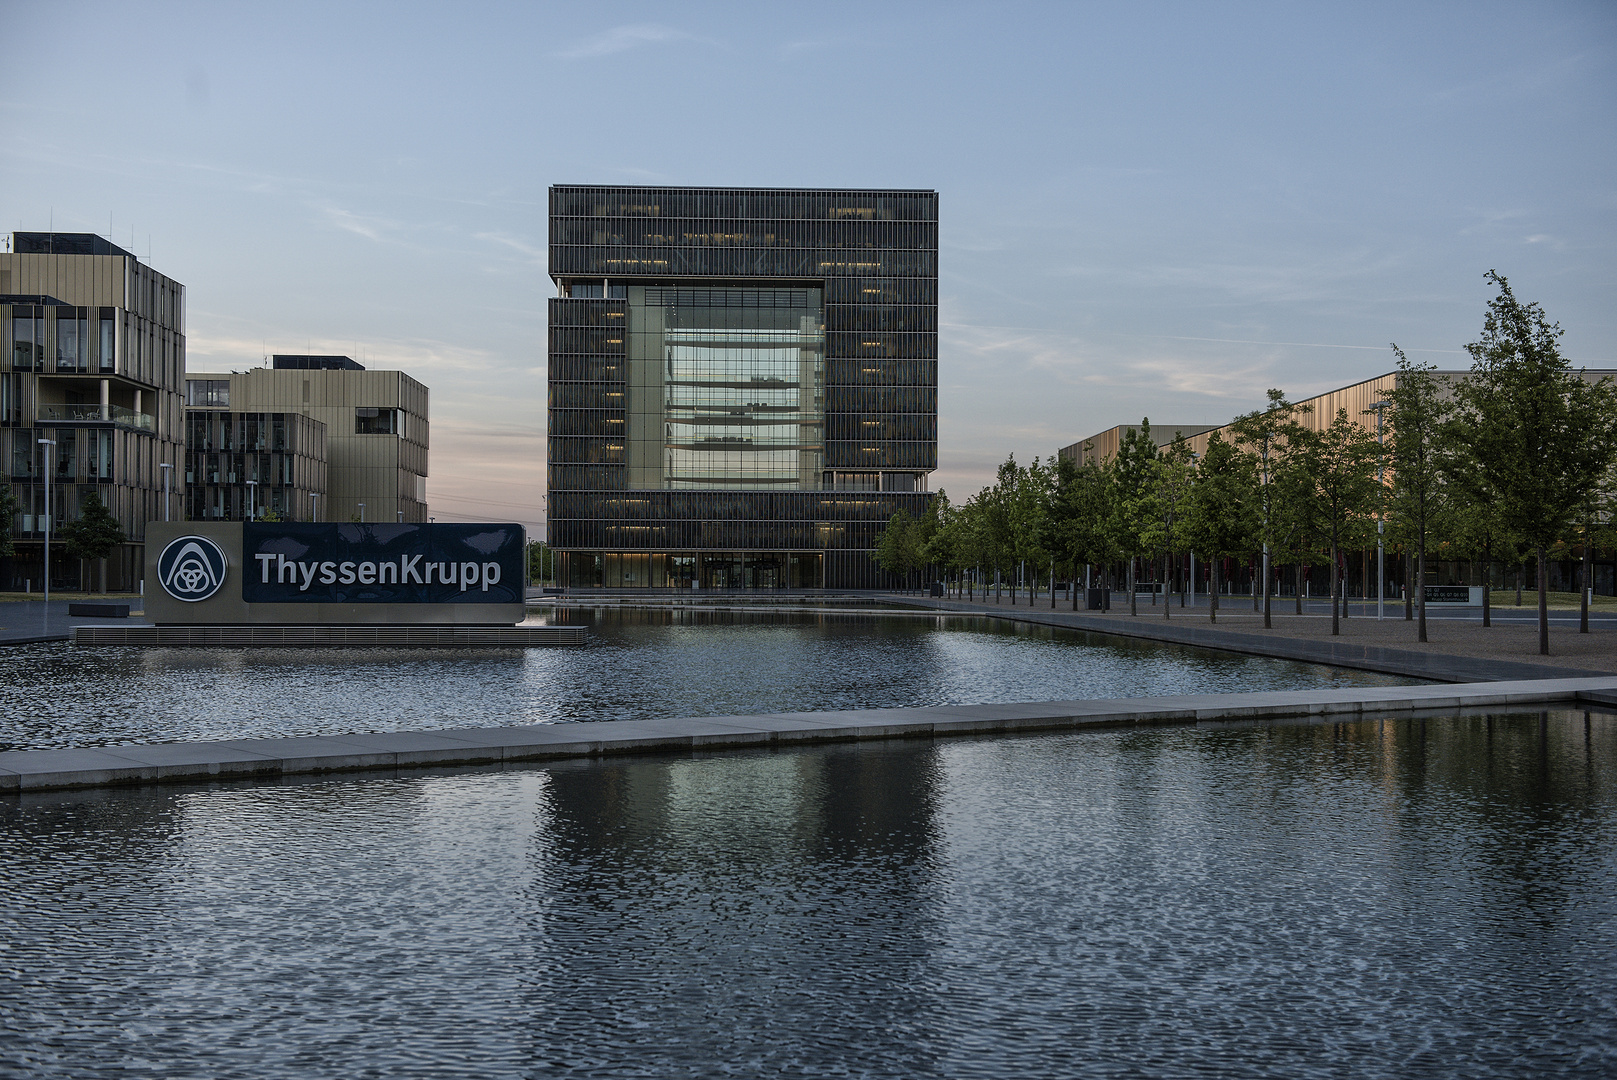 Das ThyssenKrupp Haus in Essen (Genau das "Hauptquartier von ThyssenKrupp")